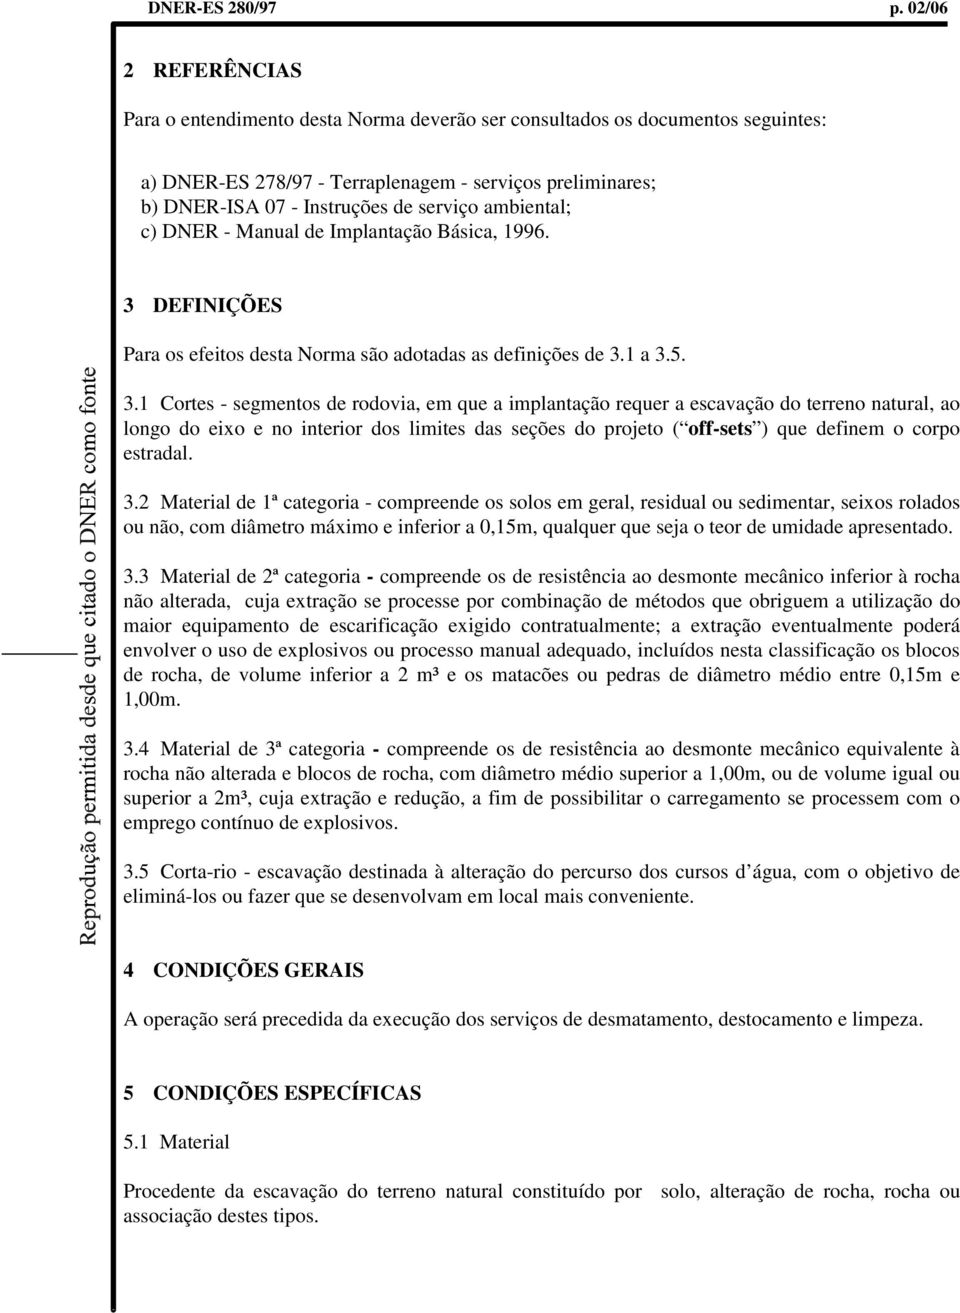 ambiental; c) DNER - Manual de Implantação Básica, 1996. 3 